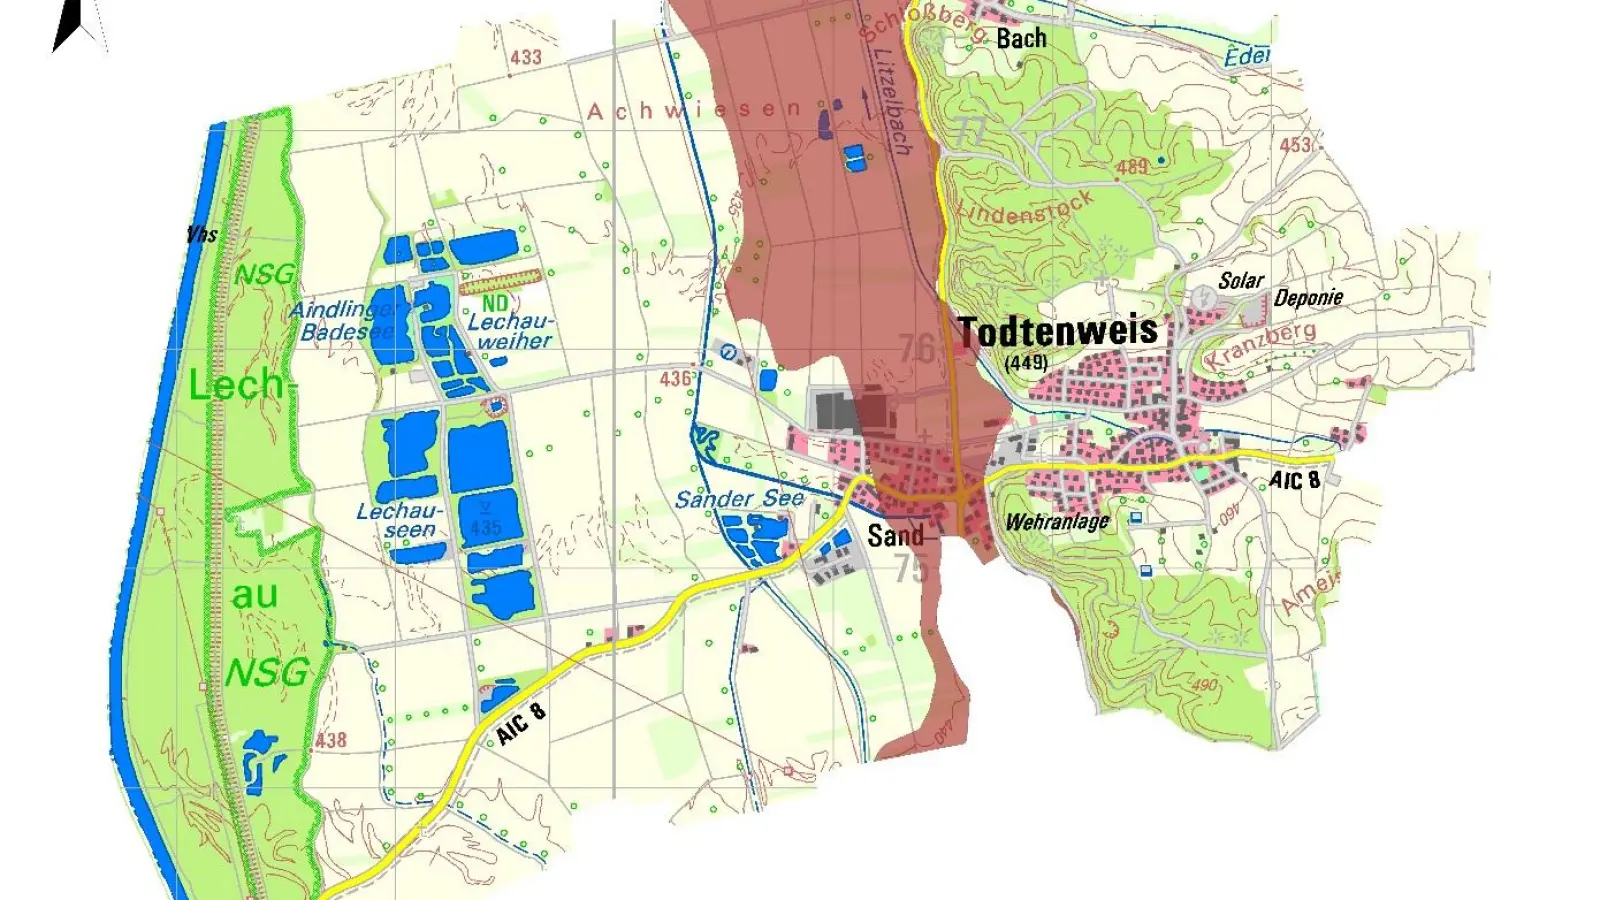 261 Hektar Moorböden liegen im Gemeindegebiet von Todtenweis. (Foto: Grafik: Klimabüro CO2 regio)